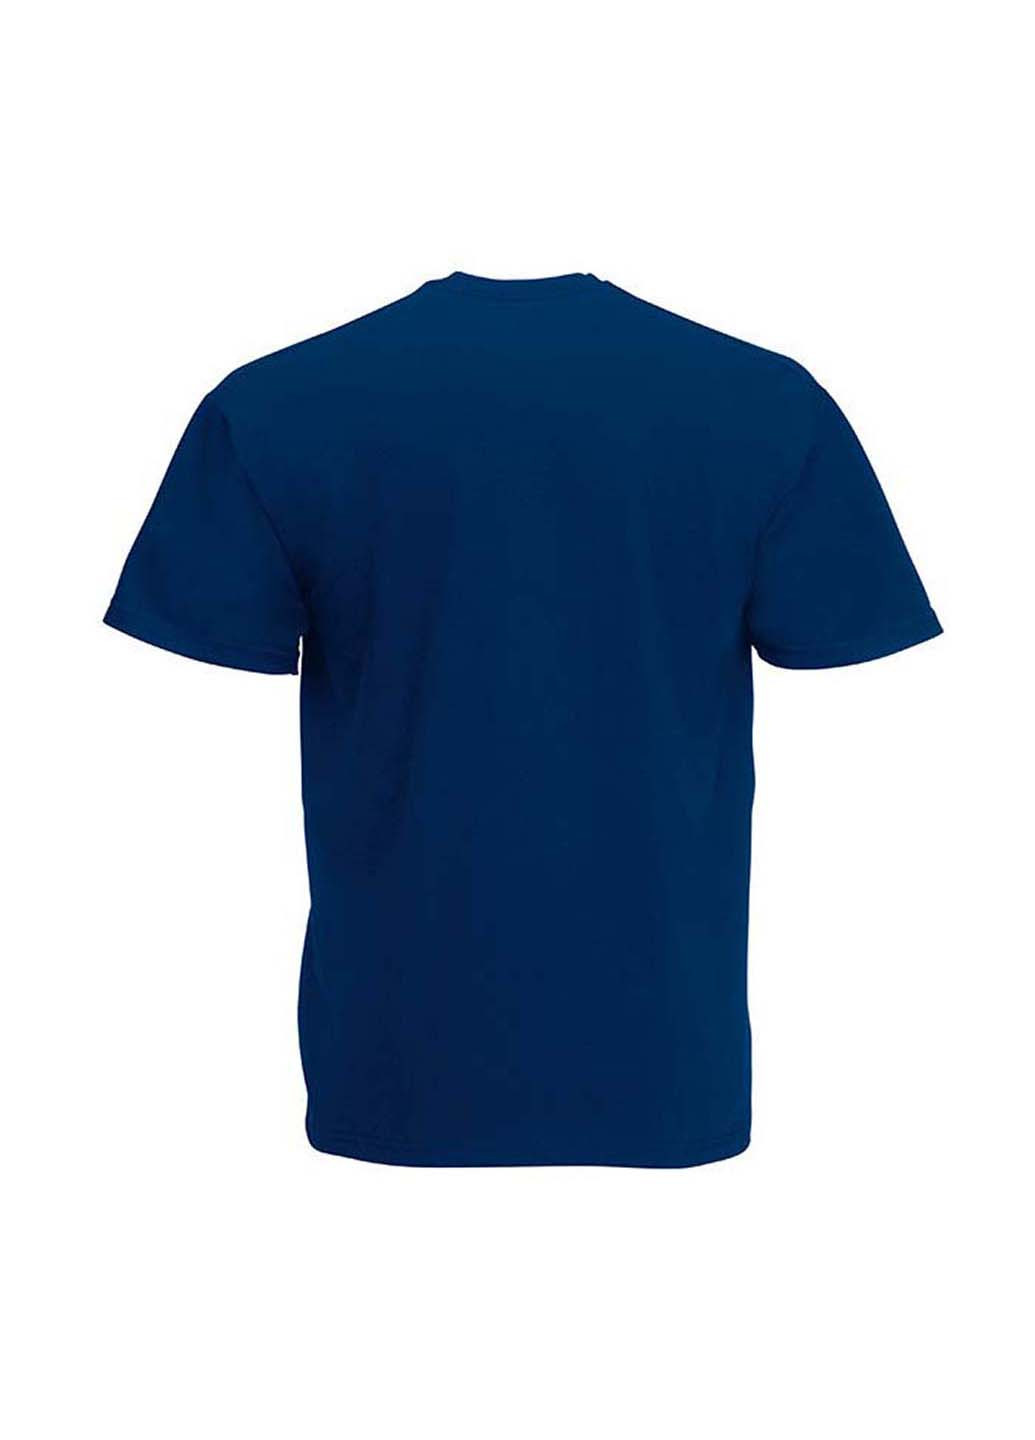 Темно-синяя демисезонная футболка Fruit of the Loom 61019032152